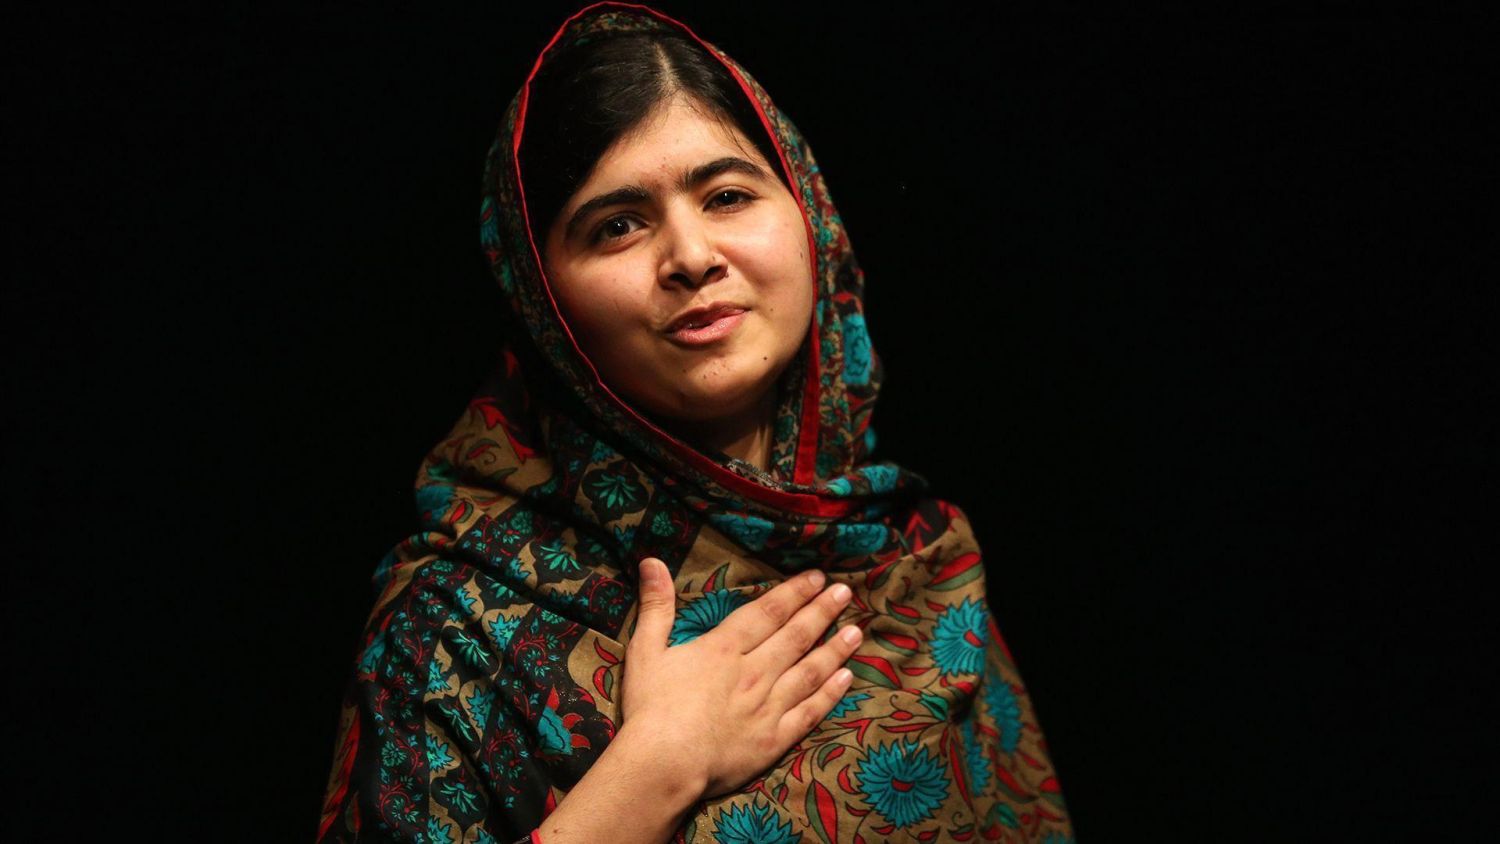 ¿Qué otros proyectos ha hecho Malala Yousafzai?